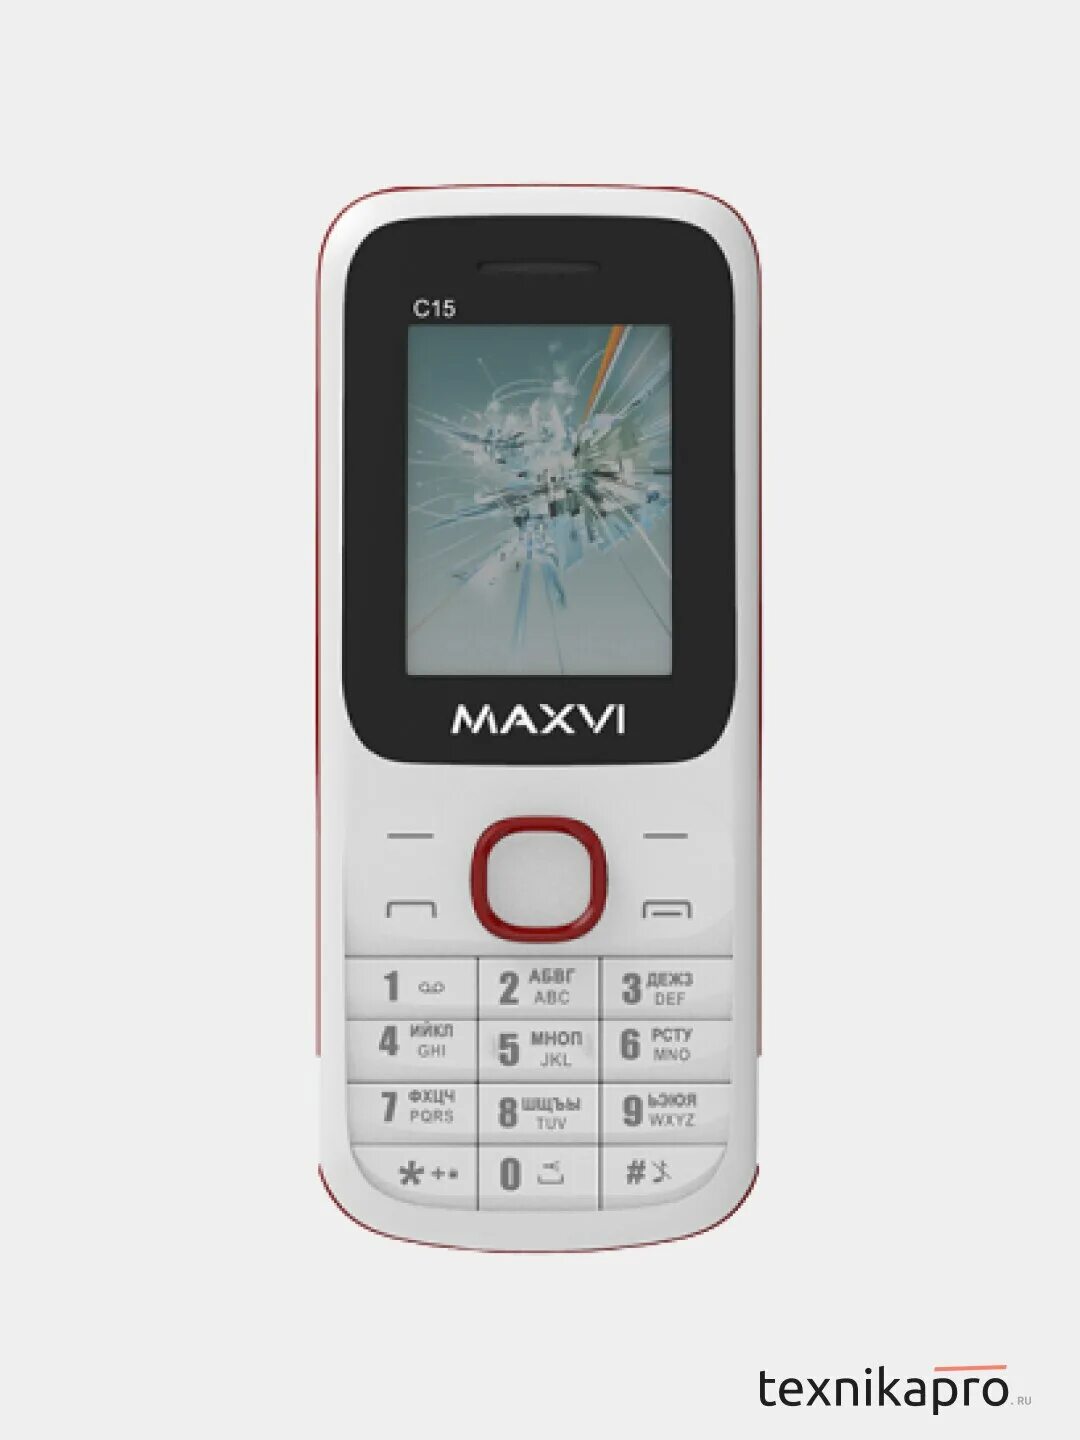 Мелодии телефона maxvi. Maxvi c15. Максви с 15. Maxvi k20 красный. Аккумулятор для Maxvi c15.